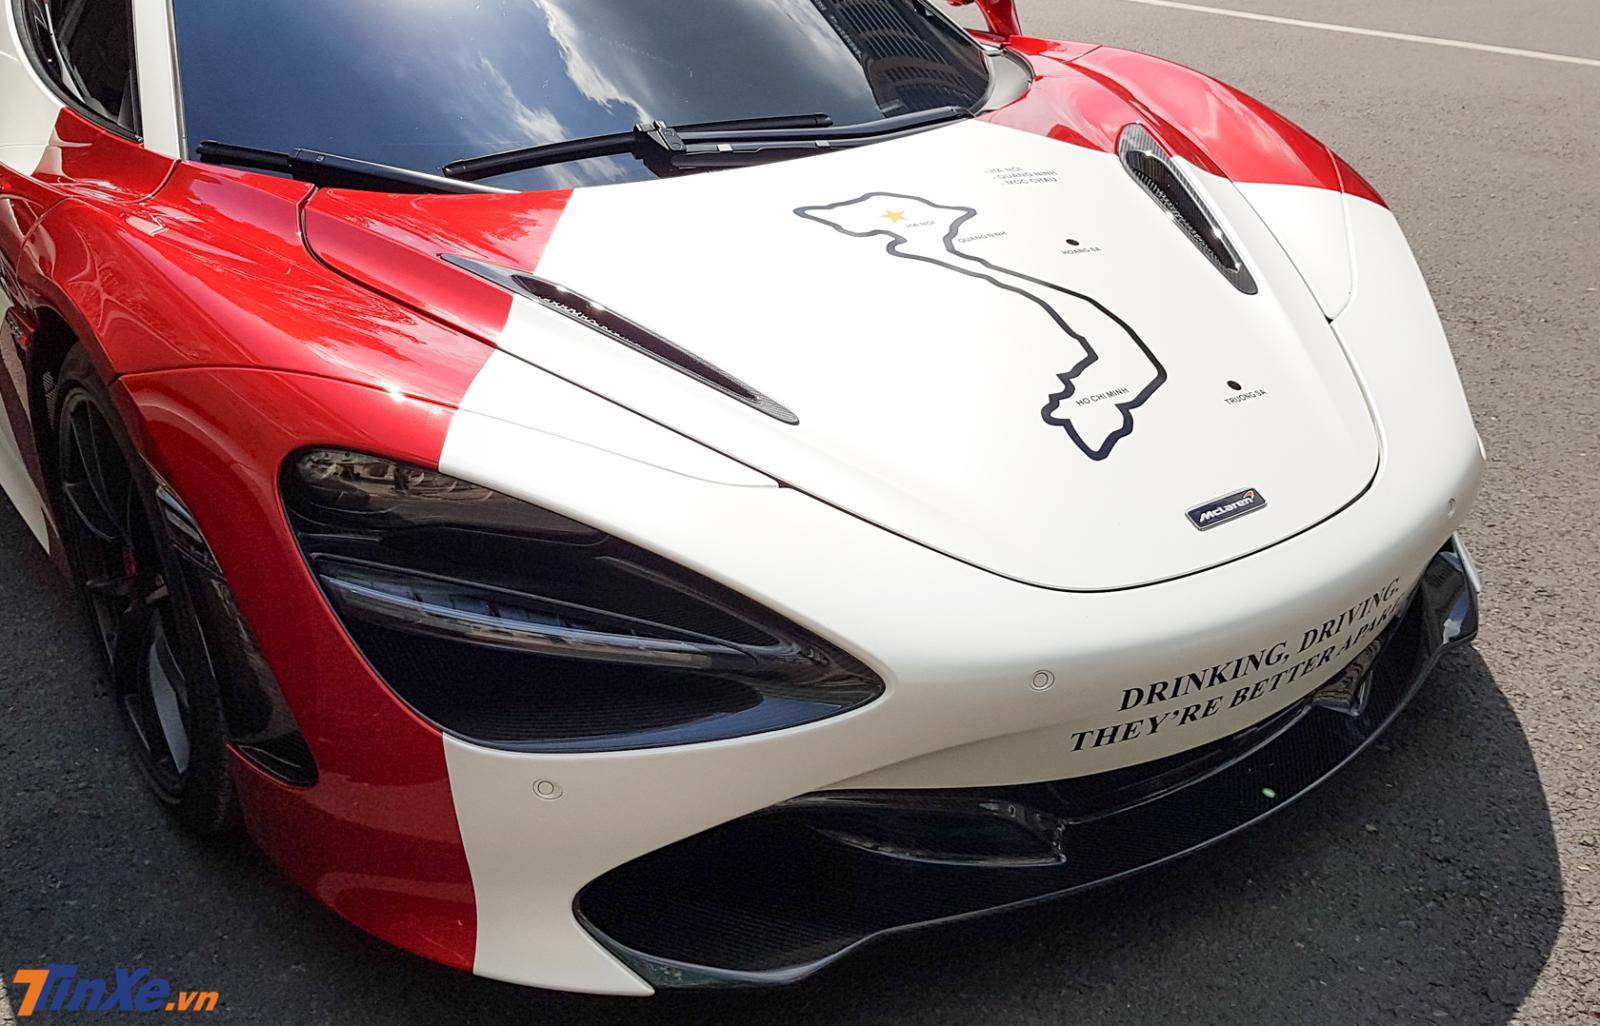 Cận cảnh mặt tiền của McLaren 720S trắng-đỏ sẽ dẫn đoàn siêu xe tham dự Car & Passion 2019 vào tháng 6